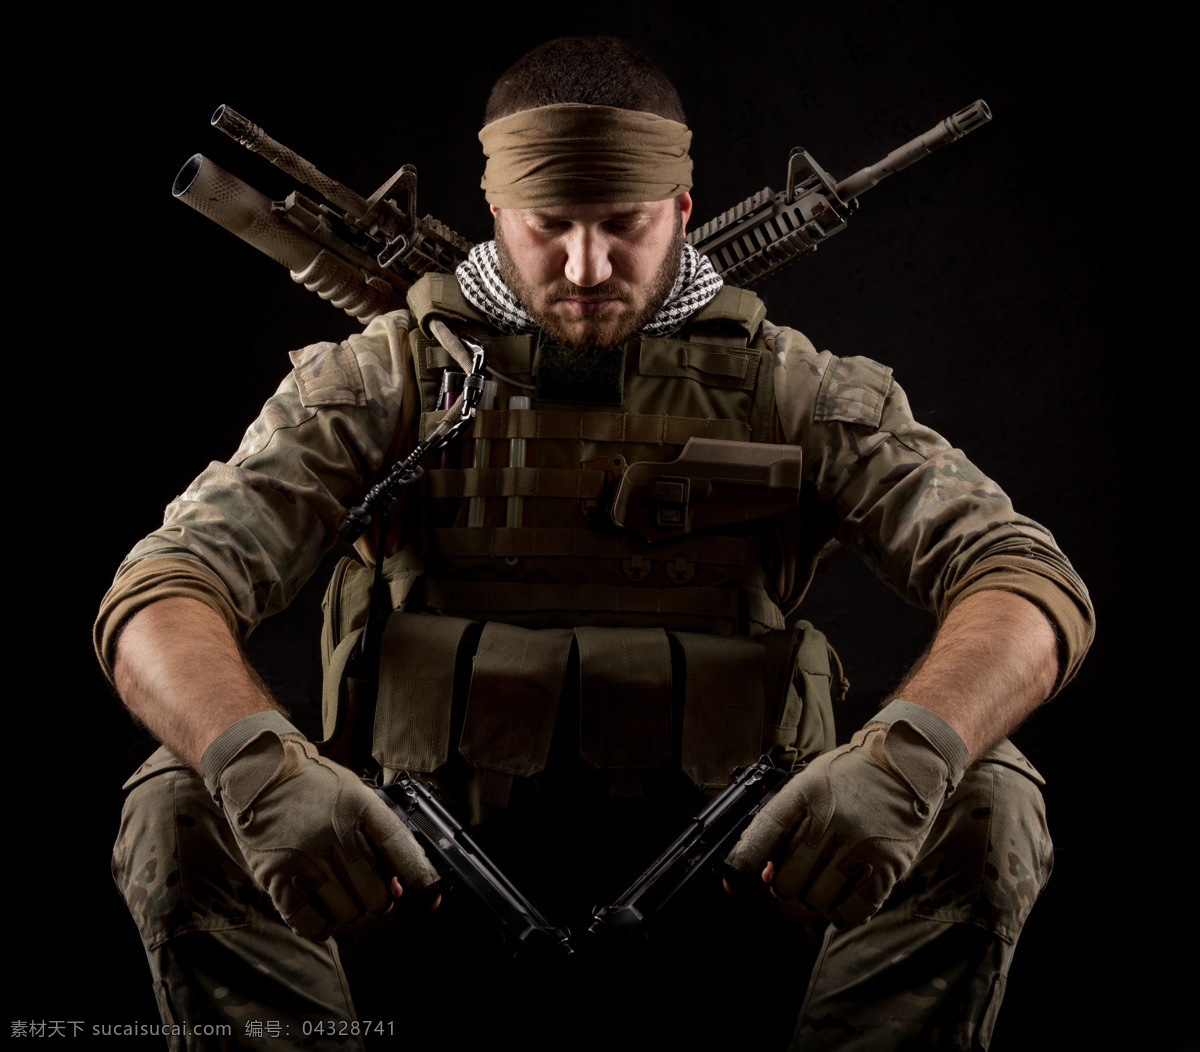 手 双 枪 军人 冲锋枪 士兵 战士 武器装备 军事武器 现代科技